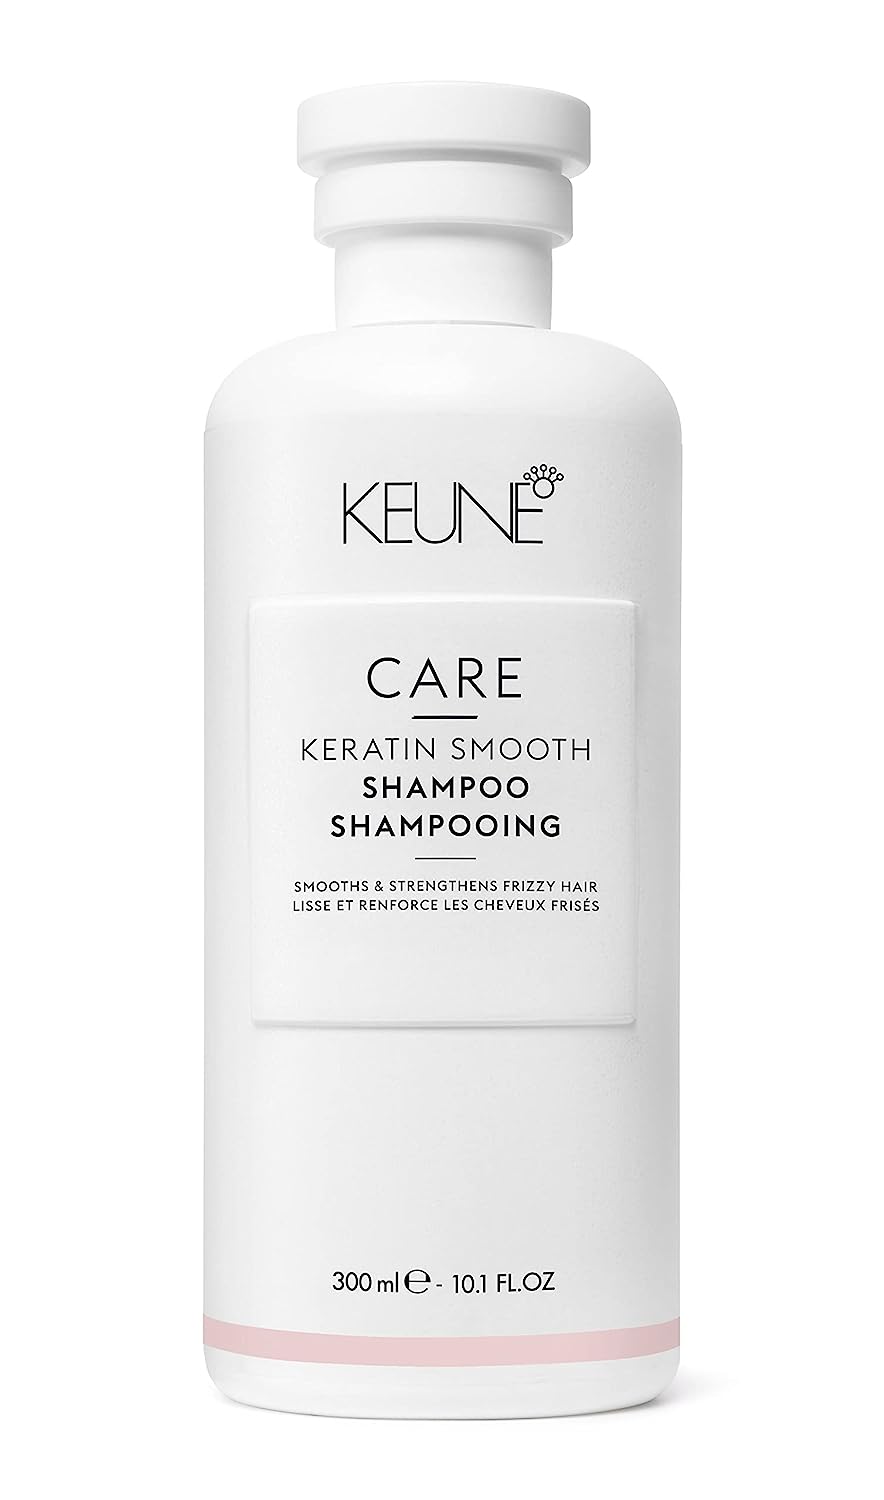 Keratin Smooth Shampoo - Keune Care